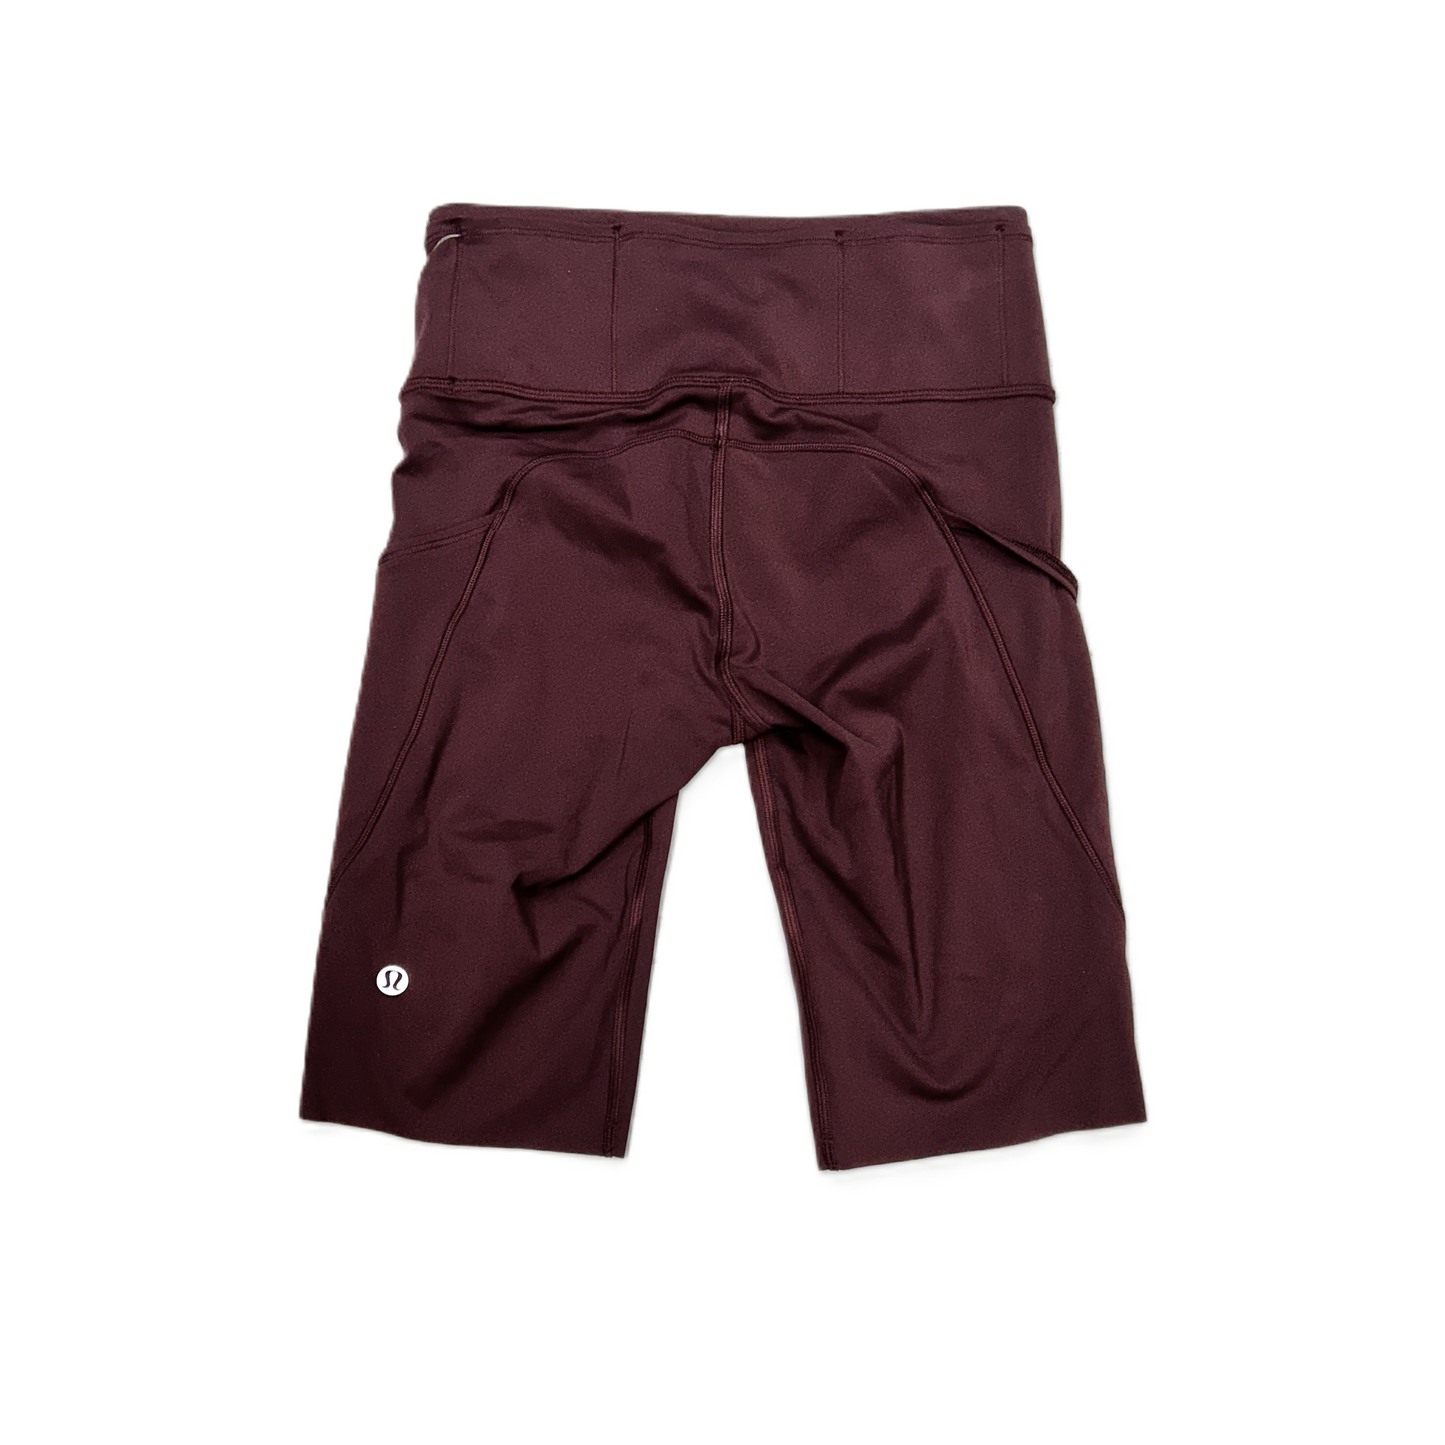 Maroon Athletic Shorts By Lululemon, Size: S